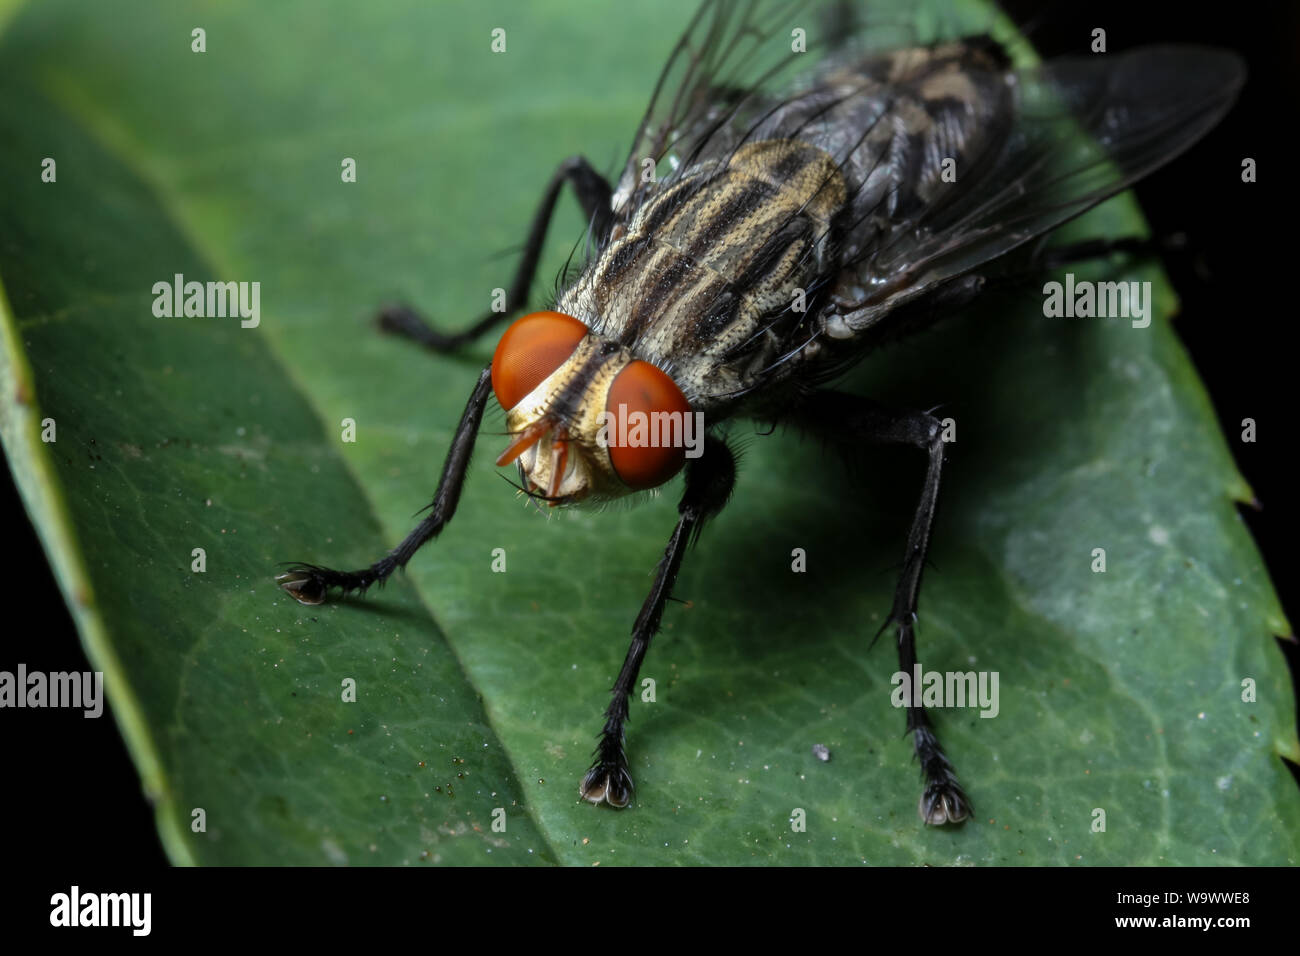 Fort agrandissement close-up d'un jardin commun fly, montrant la tête et les yeux d'insectes dans les détails Banque D'Images